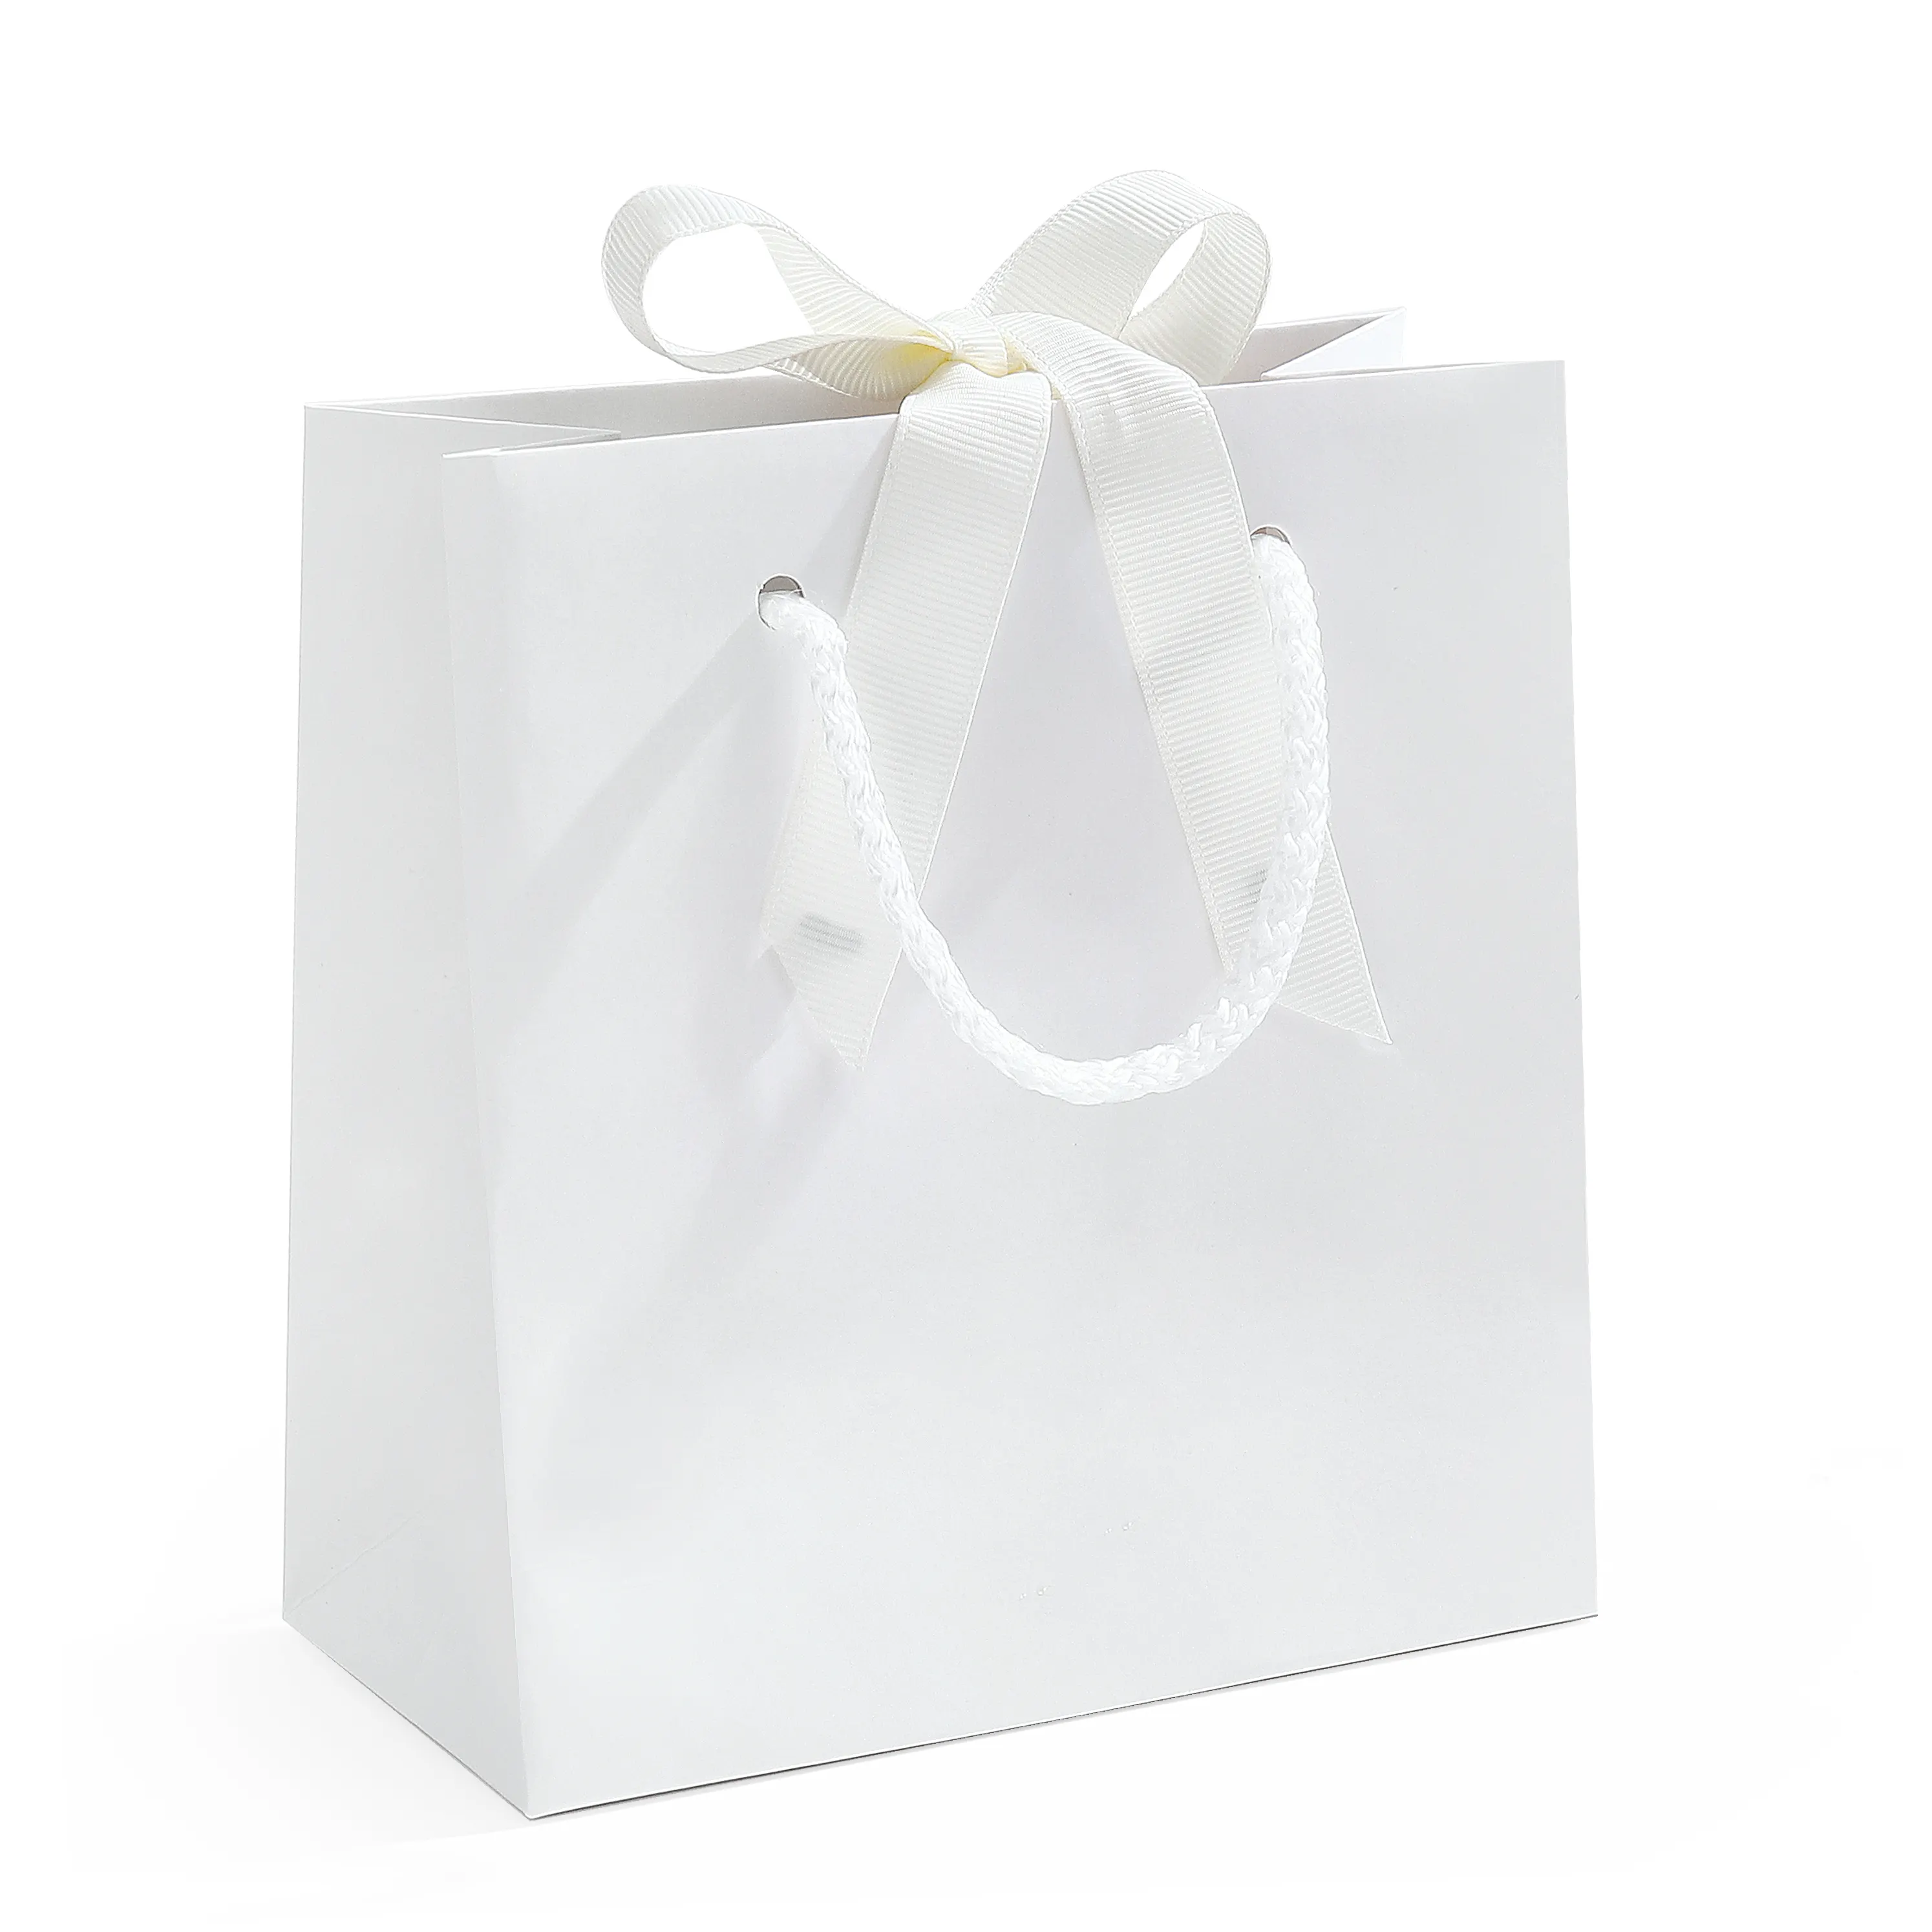 Sacchetti di carta per la protezione dell'ambiente Spot borse vuote riutilizzabili confezioni regalo legate bianche sacchetti di carta per la spesa all'ingrosso